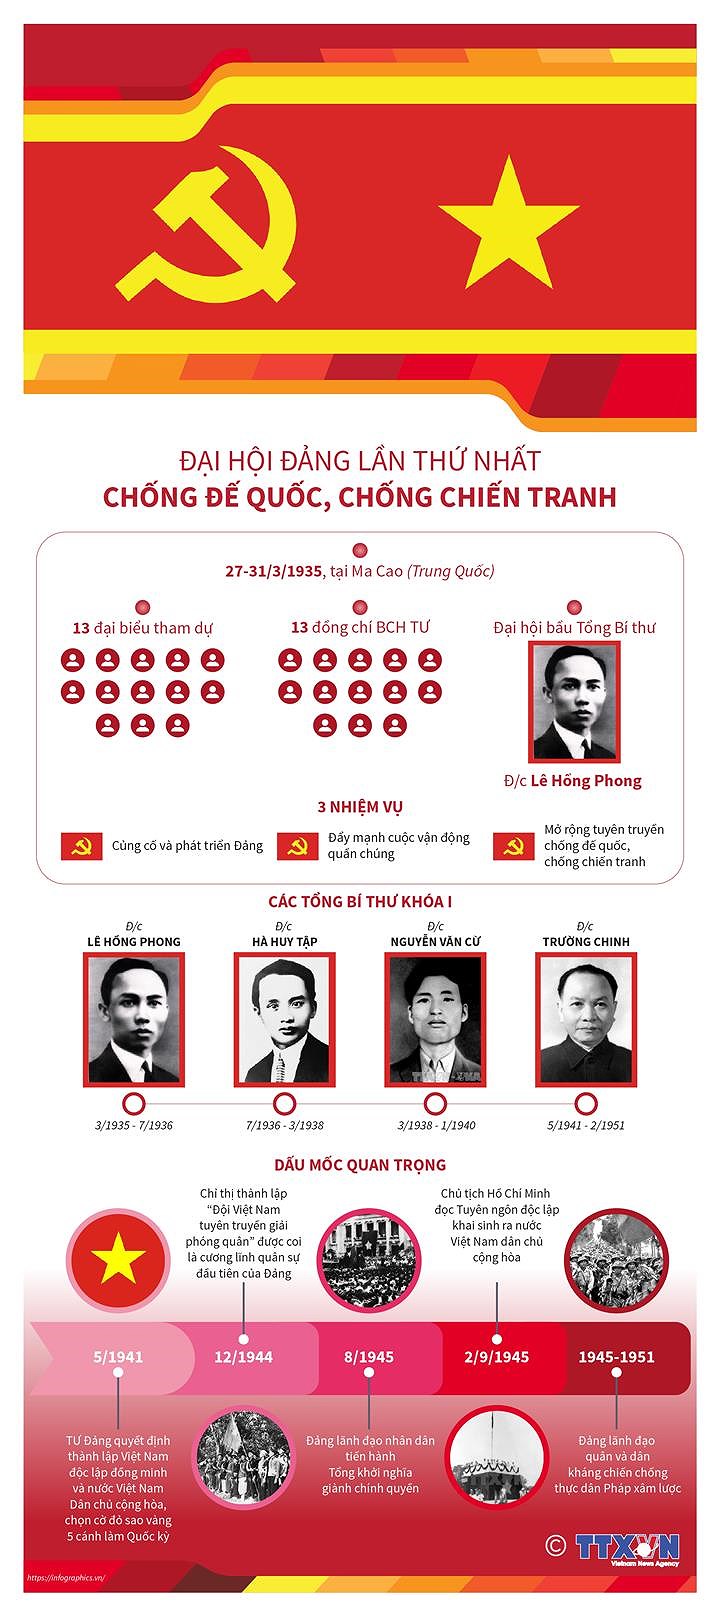 [Infographics] Dai hoi Dang lan I: Chong de quoc, chong chien tranh hinh anh 1